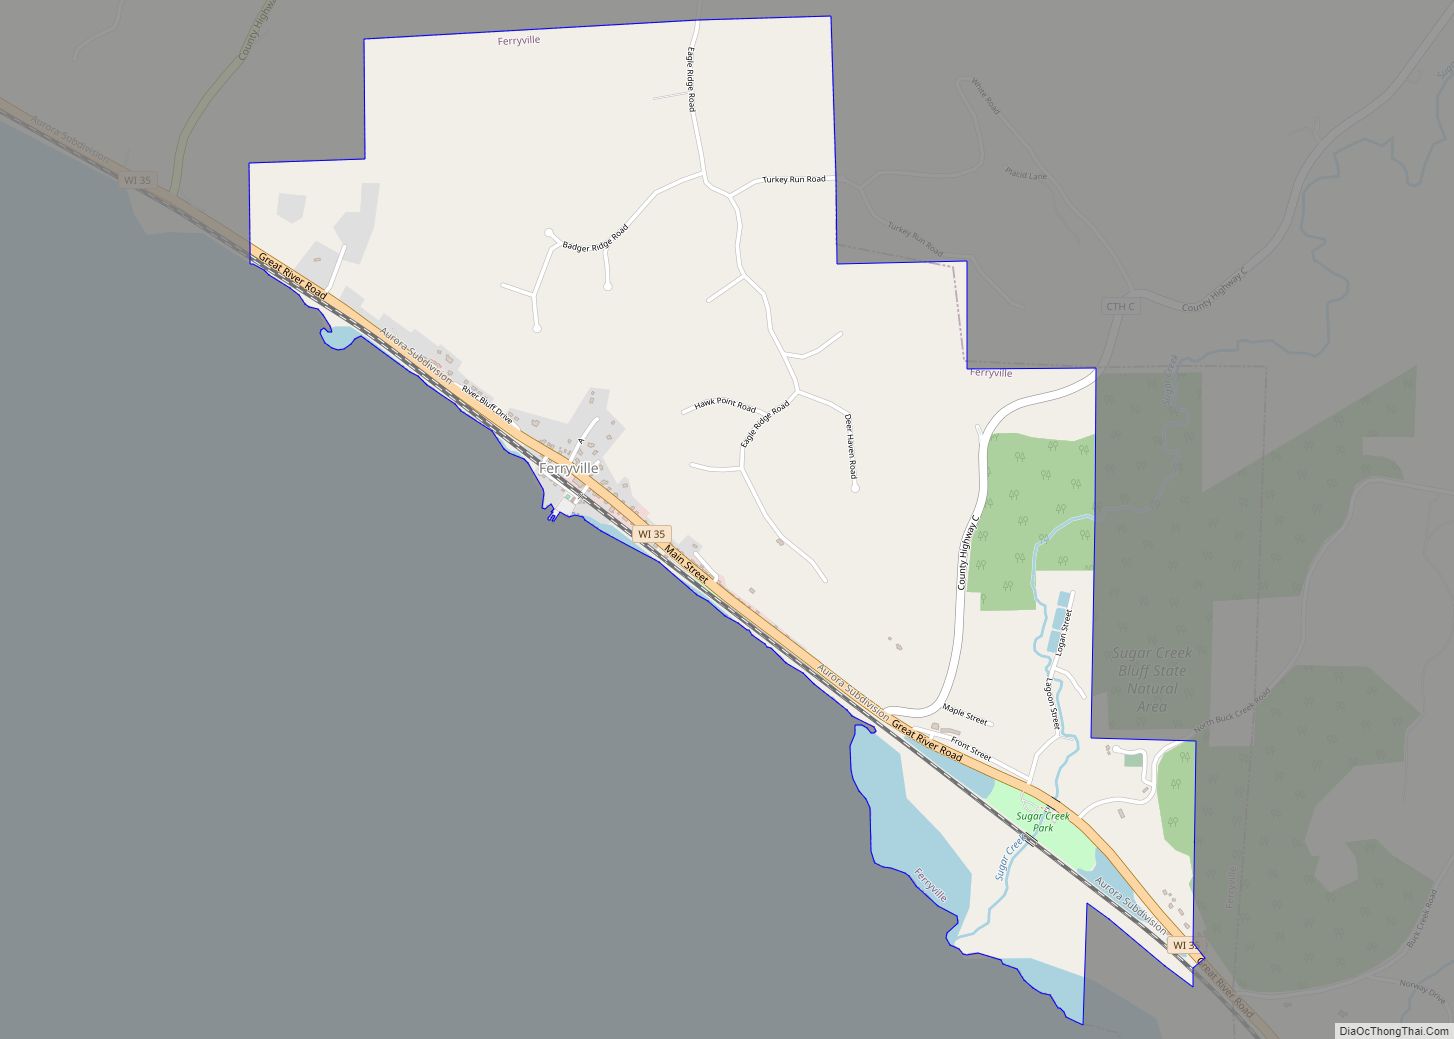 Map of Ferryville village